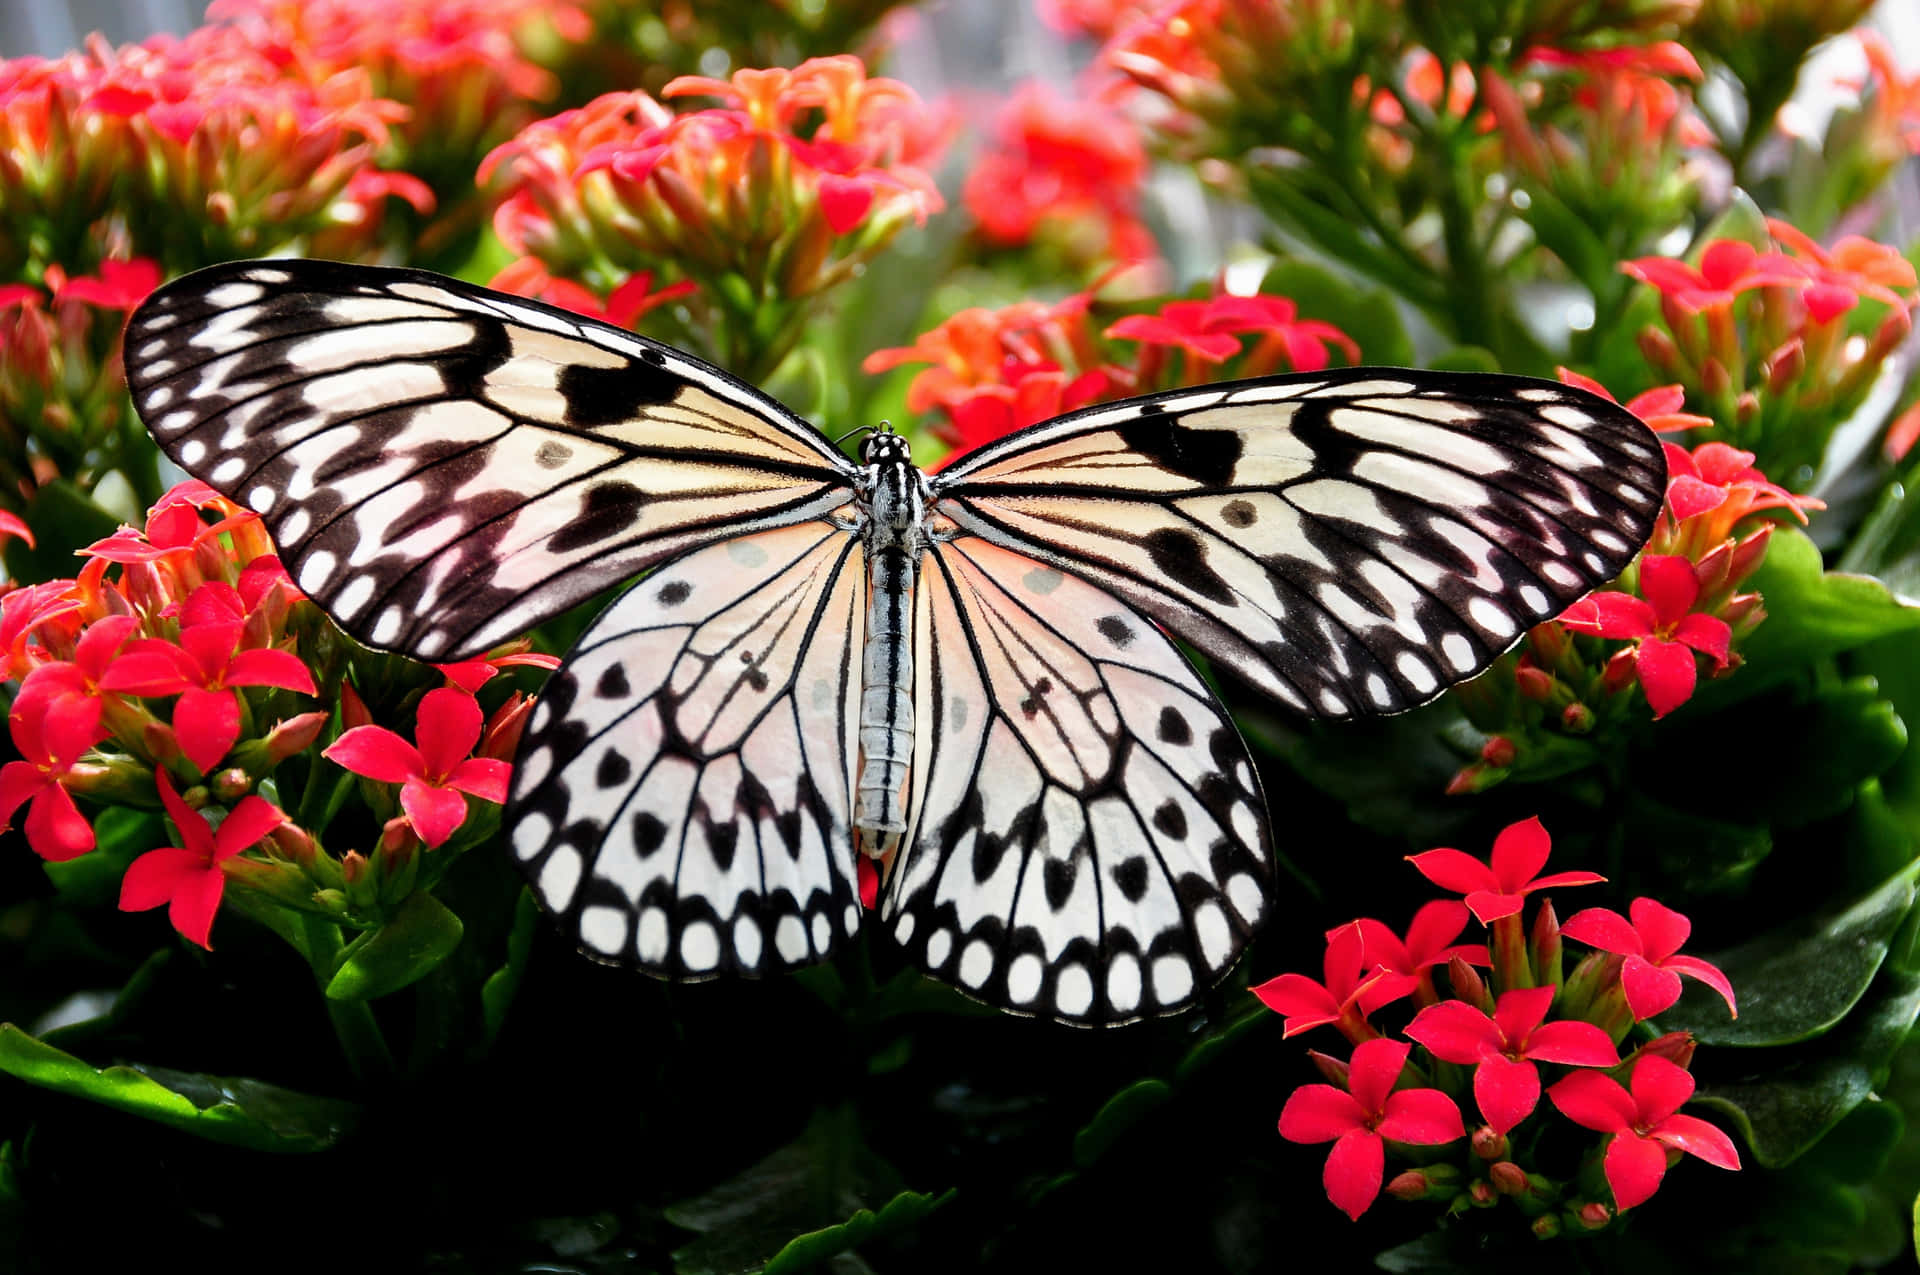 Einwunderschöner Schmetterling Präsentiert Seine Kräftigen Farben Auf Einer Blume.